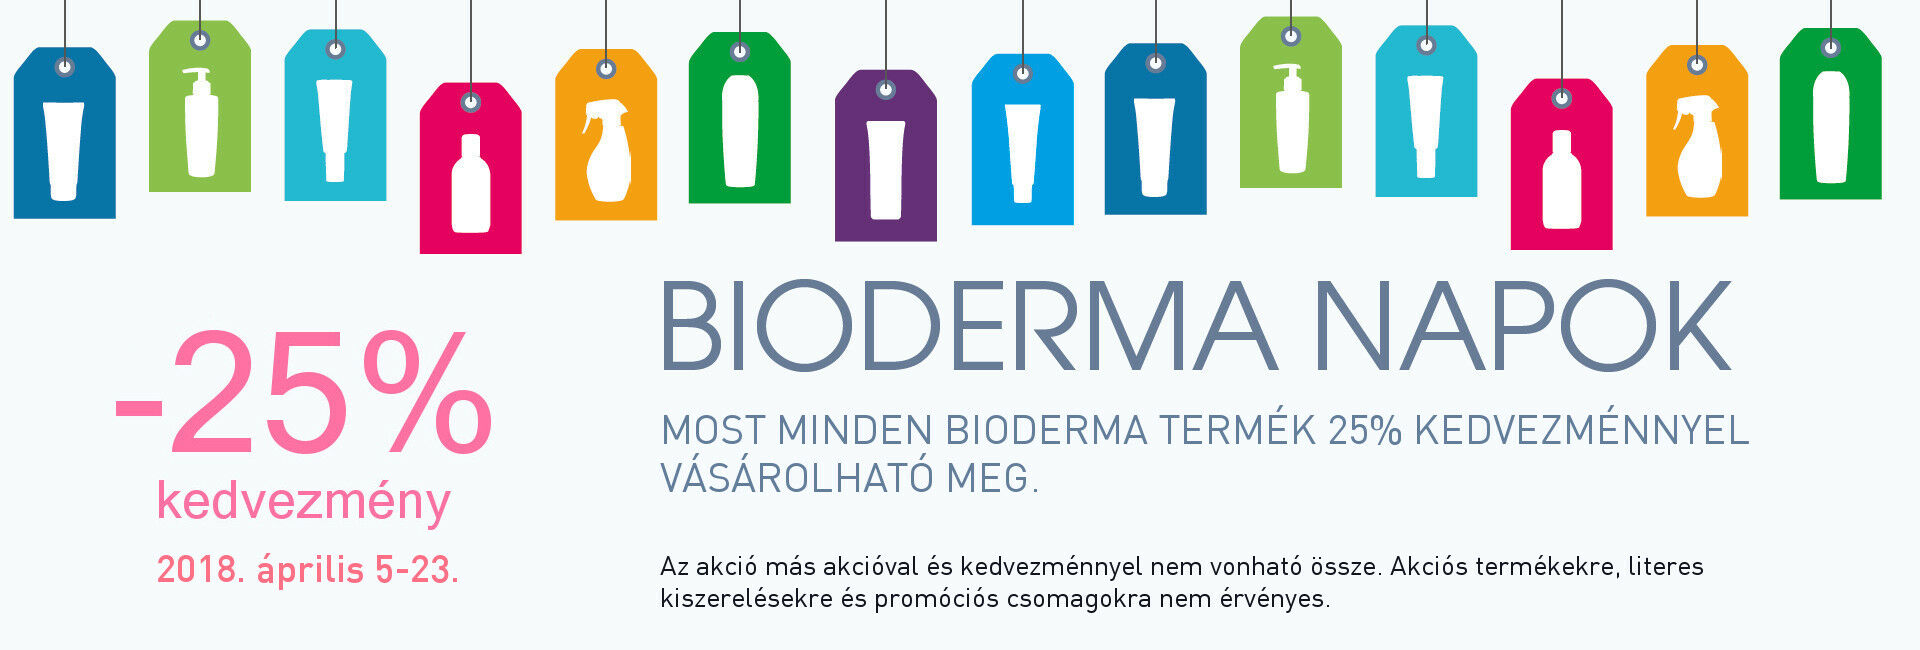 Bioderma Napok: minden Bioderma terméket 25% kedvezménnyel kínálunk 2018. április 5-23. között!